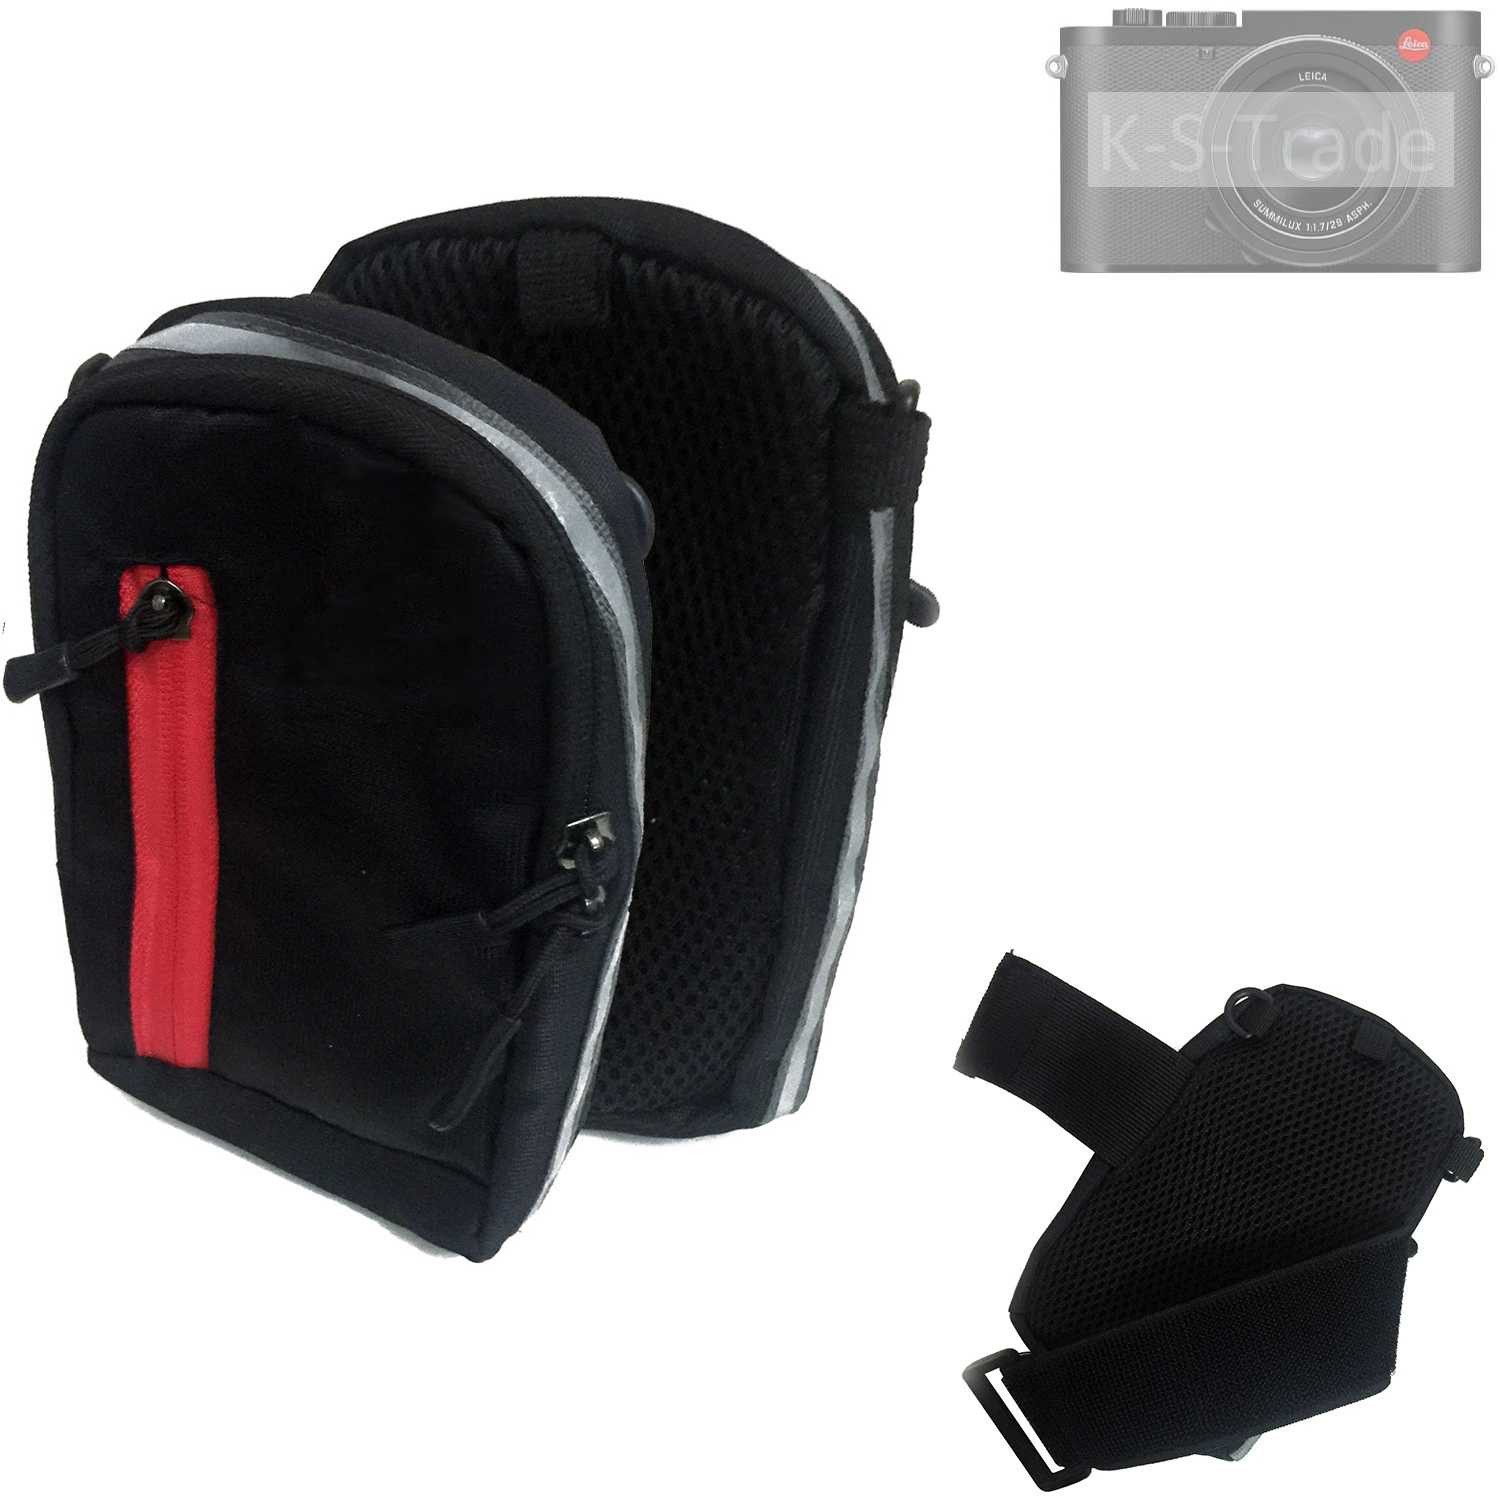 K-S-Trade Kameratasche für Leica Q3, Fototasche Kameratasche Gürteltasche Schutz Hülle Case bag